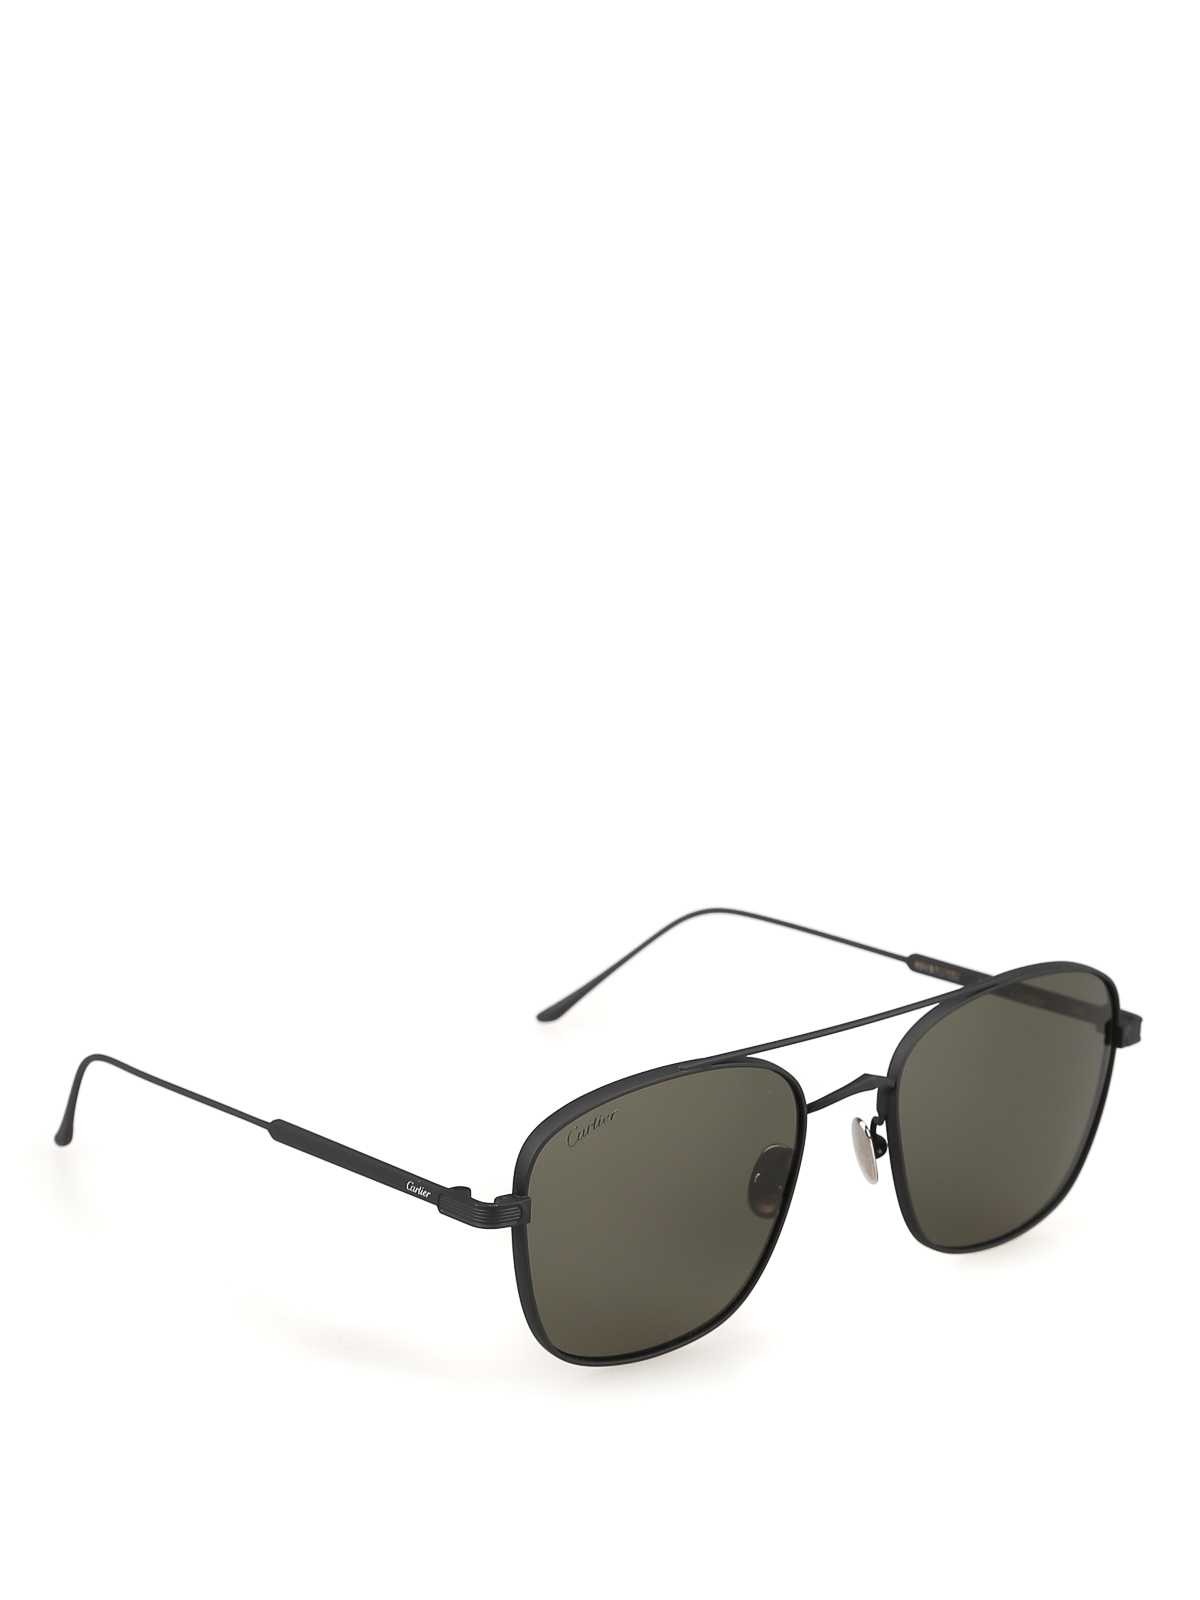 cartier sunglasses square